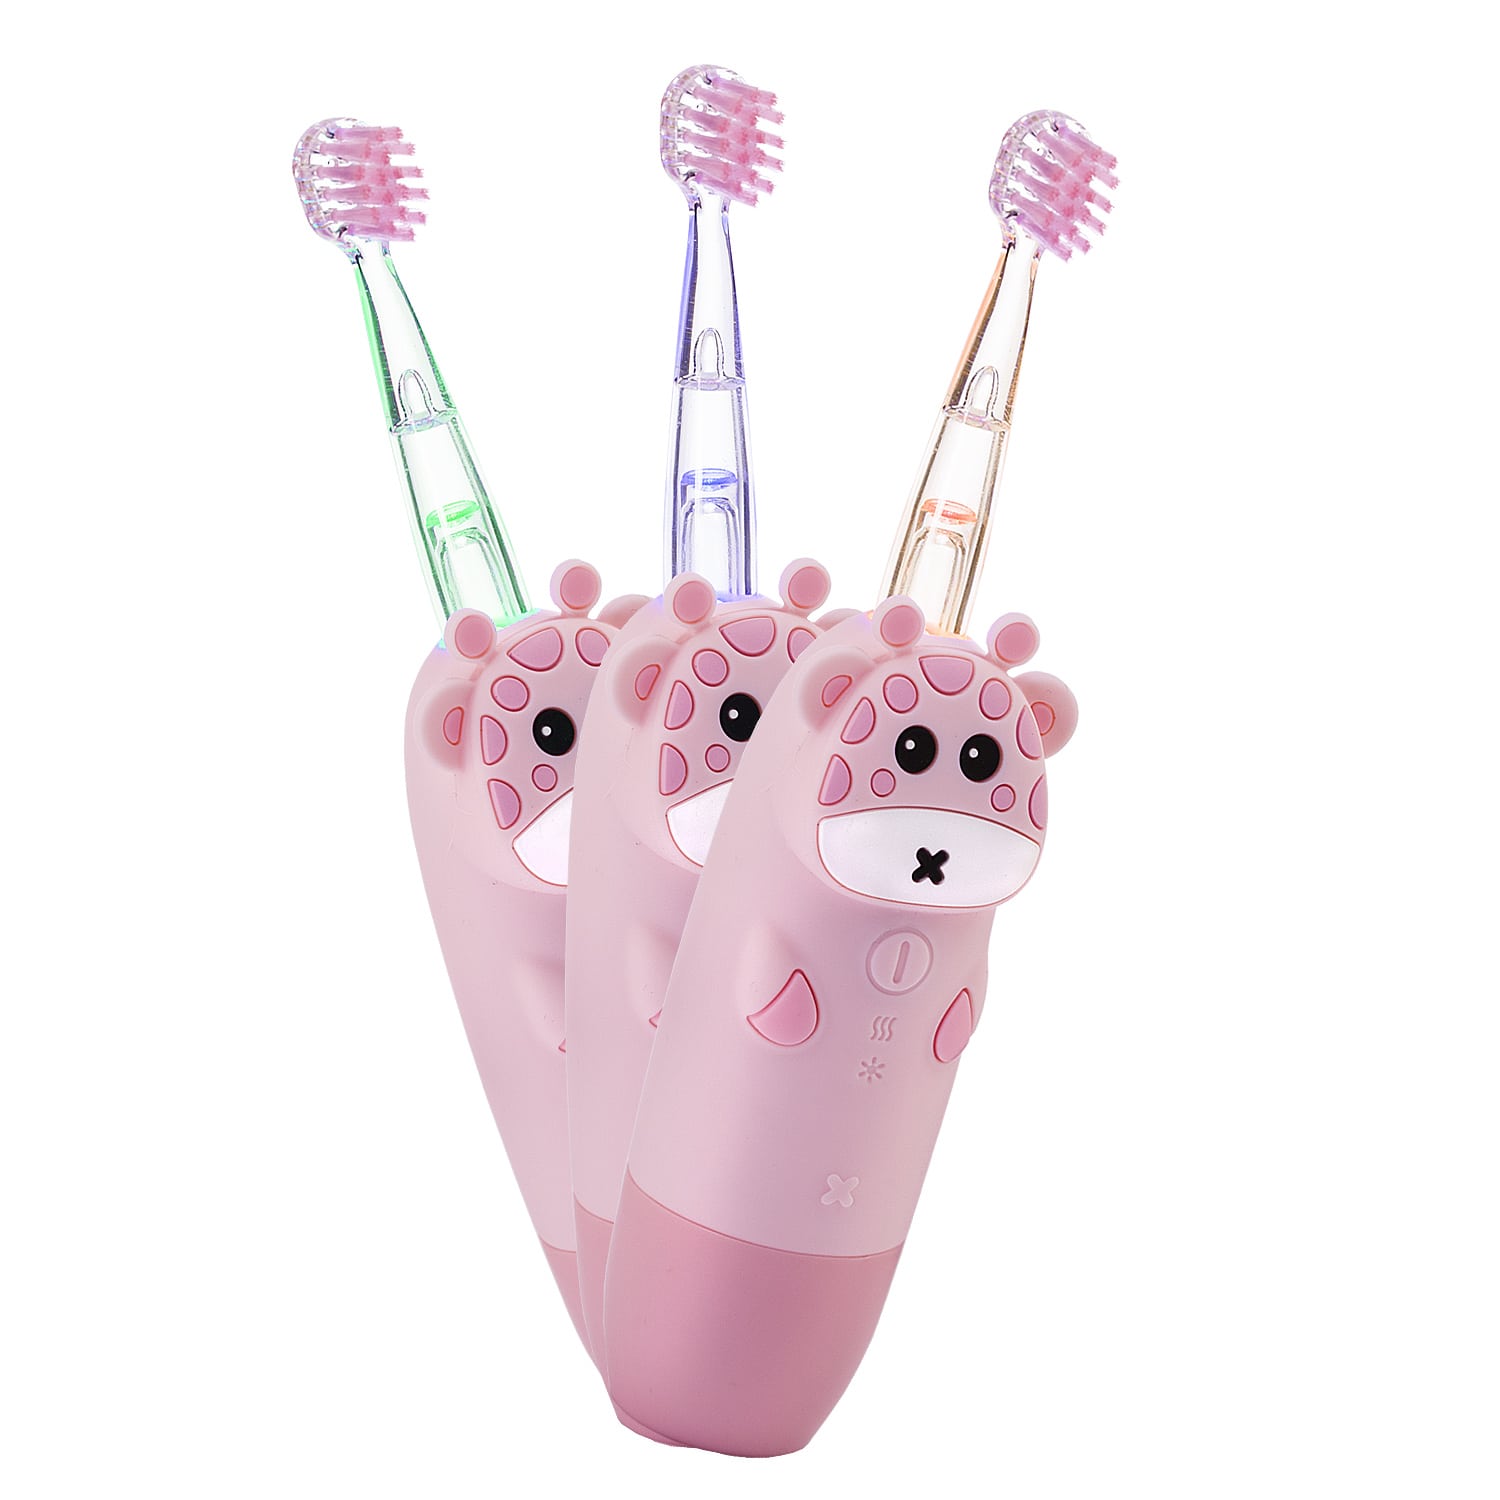 REVYLINE Детская электрическая звуковая зубная щетка RL 025 Baby 1+, розовая, 1 шт (REVYLINE, Электрические зубные щетки) цена и фото